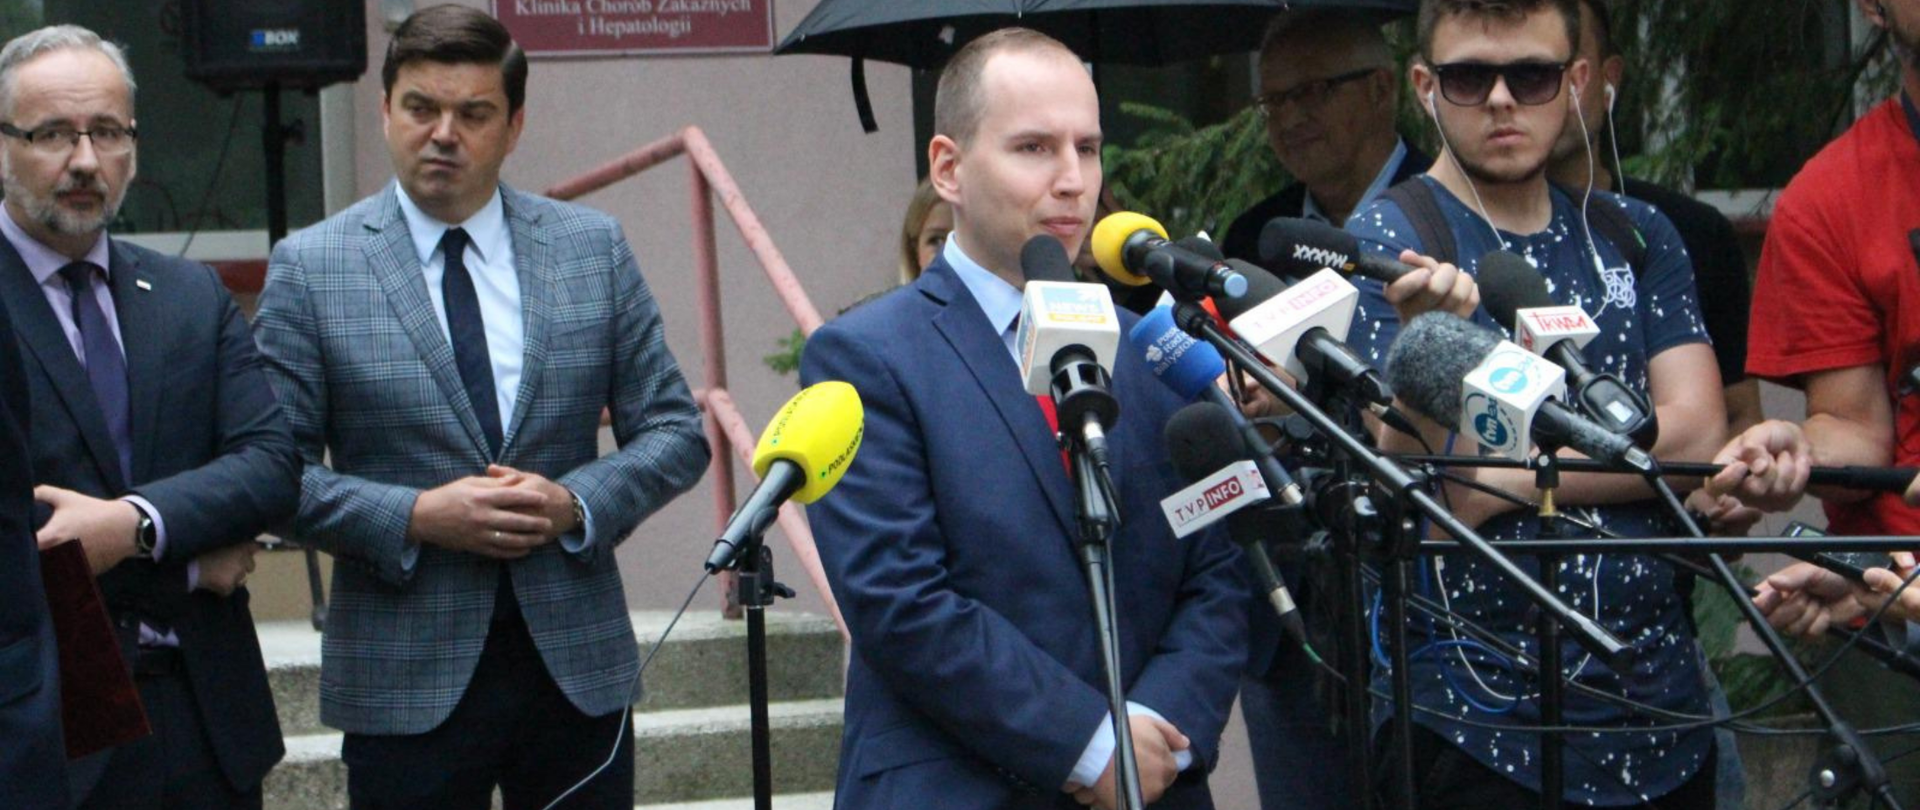 Minister Adam Andruszkiewicz w trakcie konferencji prasowej. Przed nim mikrofony dziennikarzy, z tyłu widoczny m.in. minister zdrowia Adam Niedzielski.